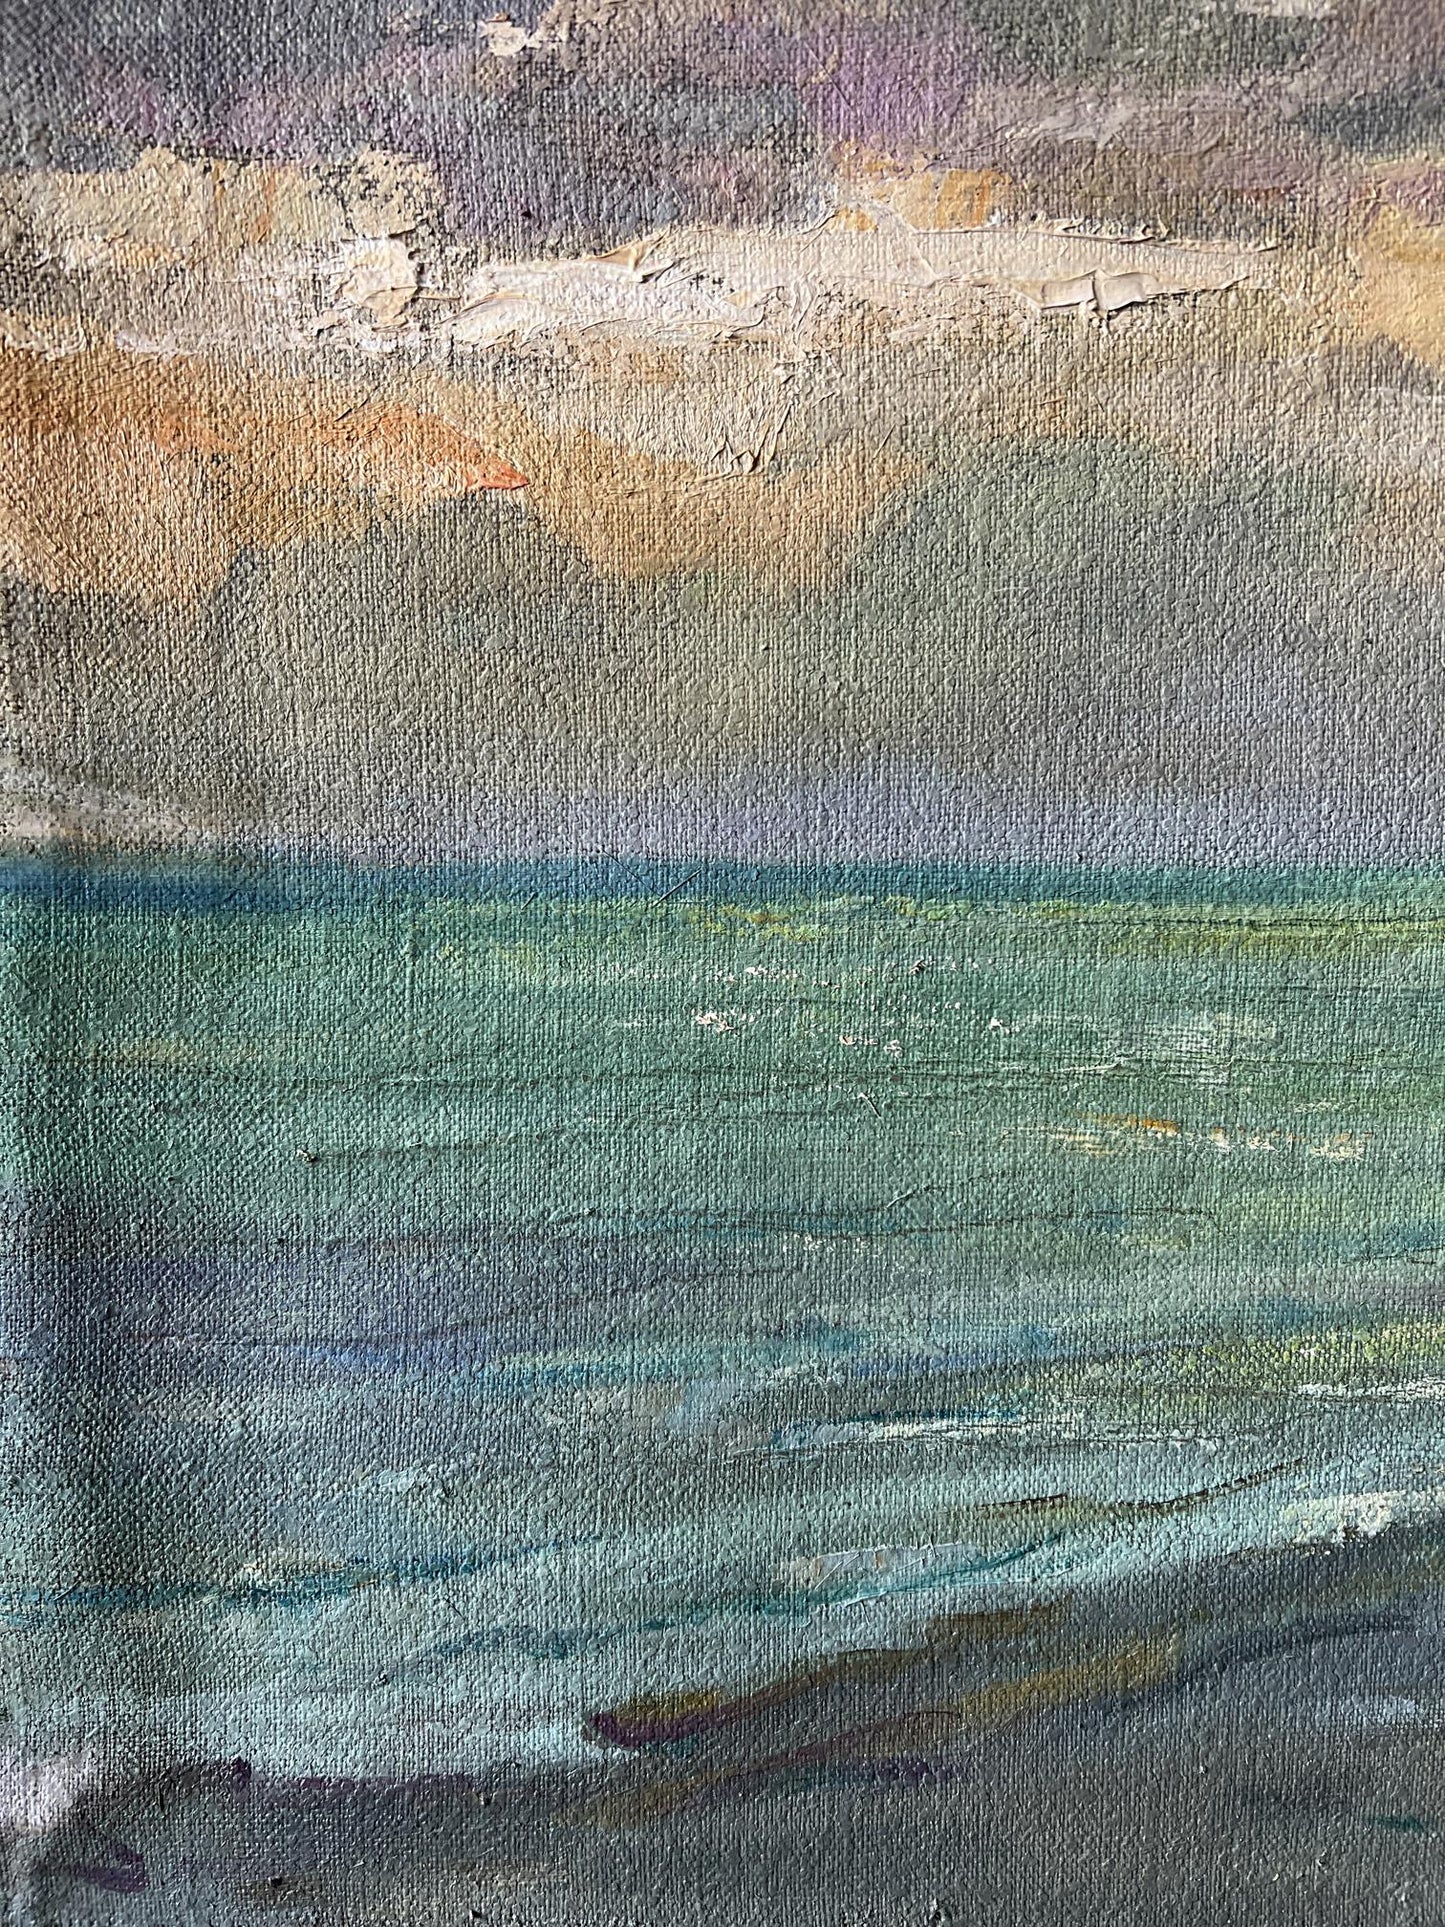 Oil painting Evening at sea V. Mishurovsky